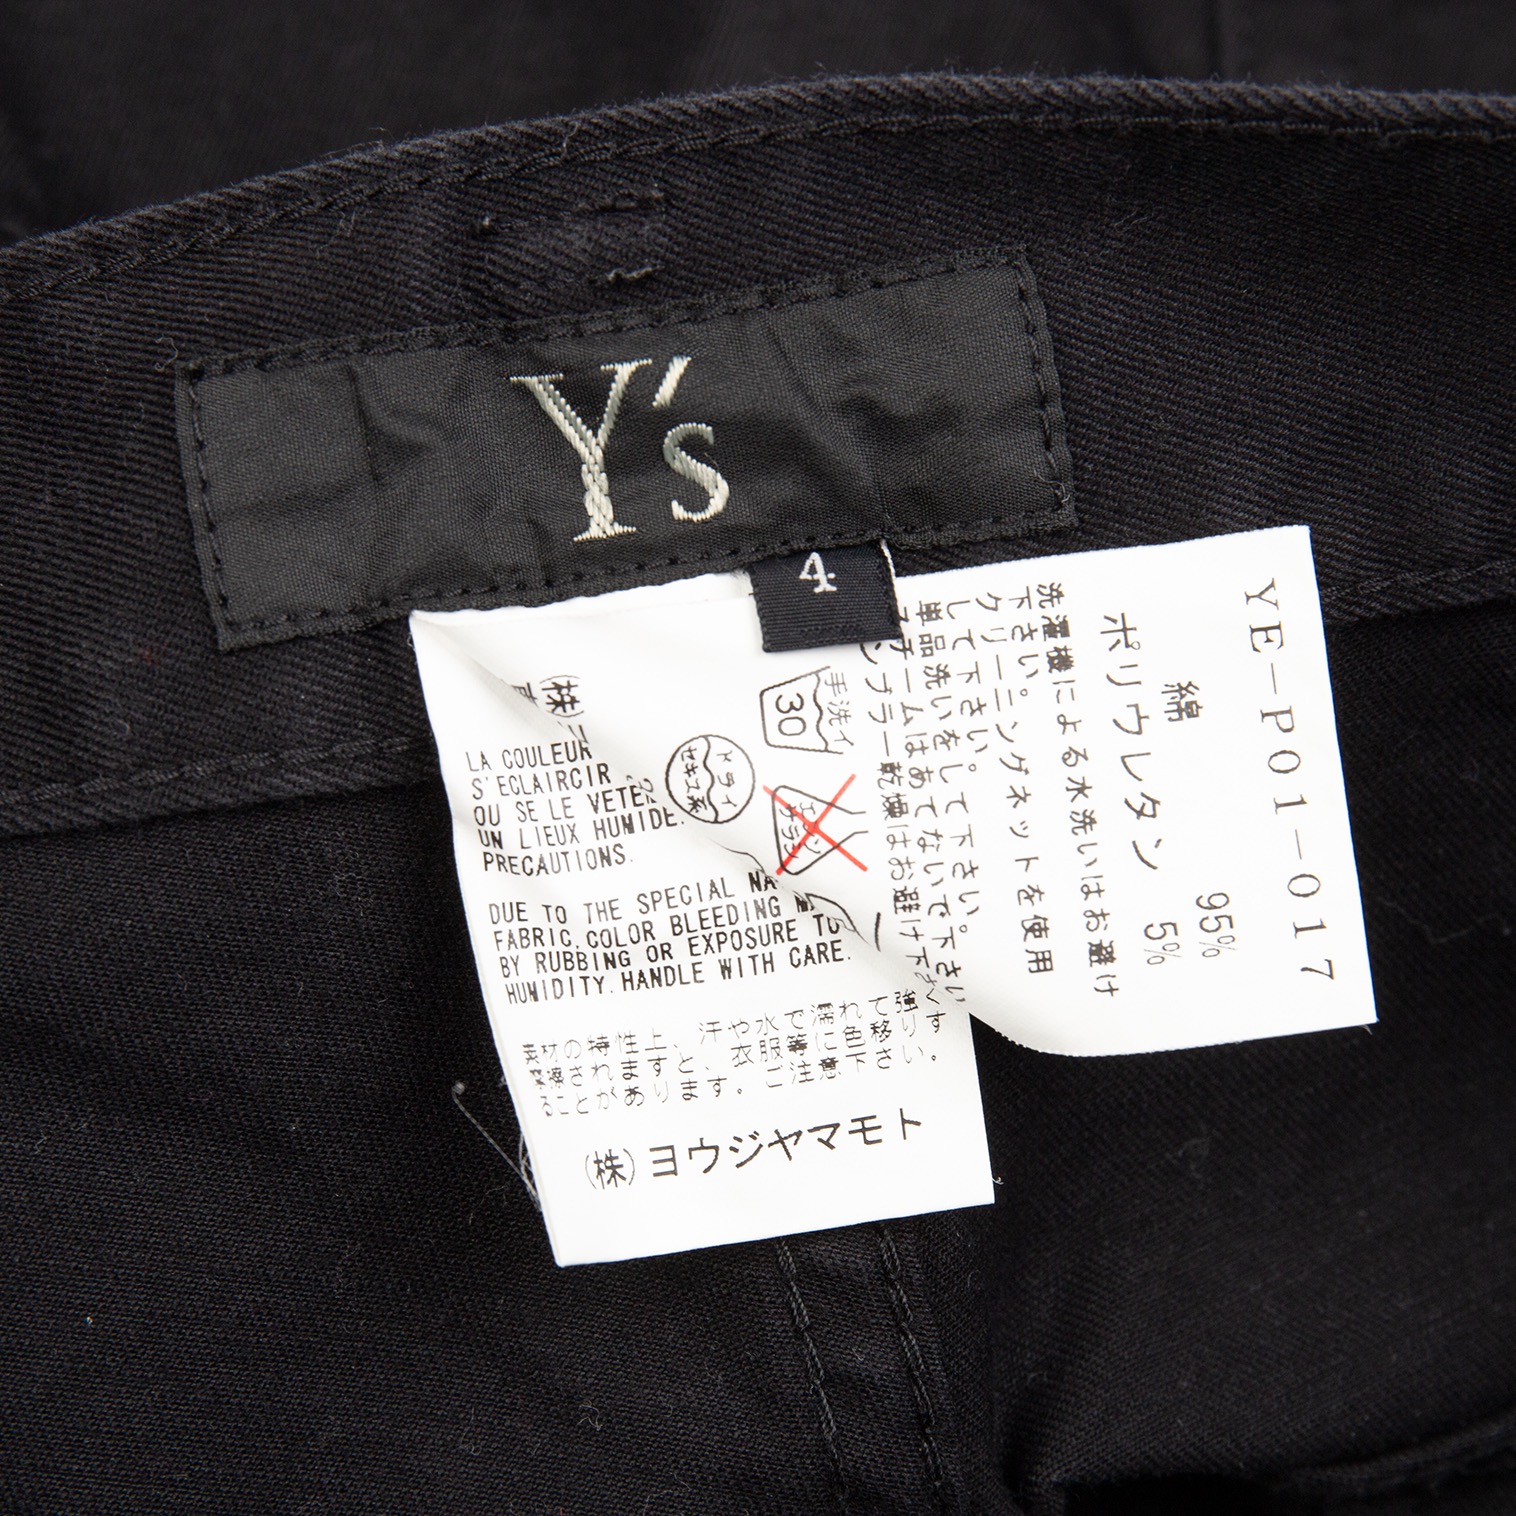 ワイズY's コットンサイドジップポケットパンツ 黒4